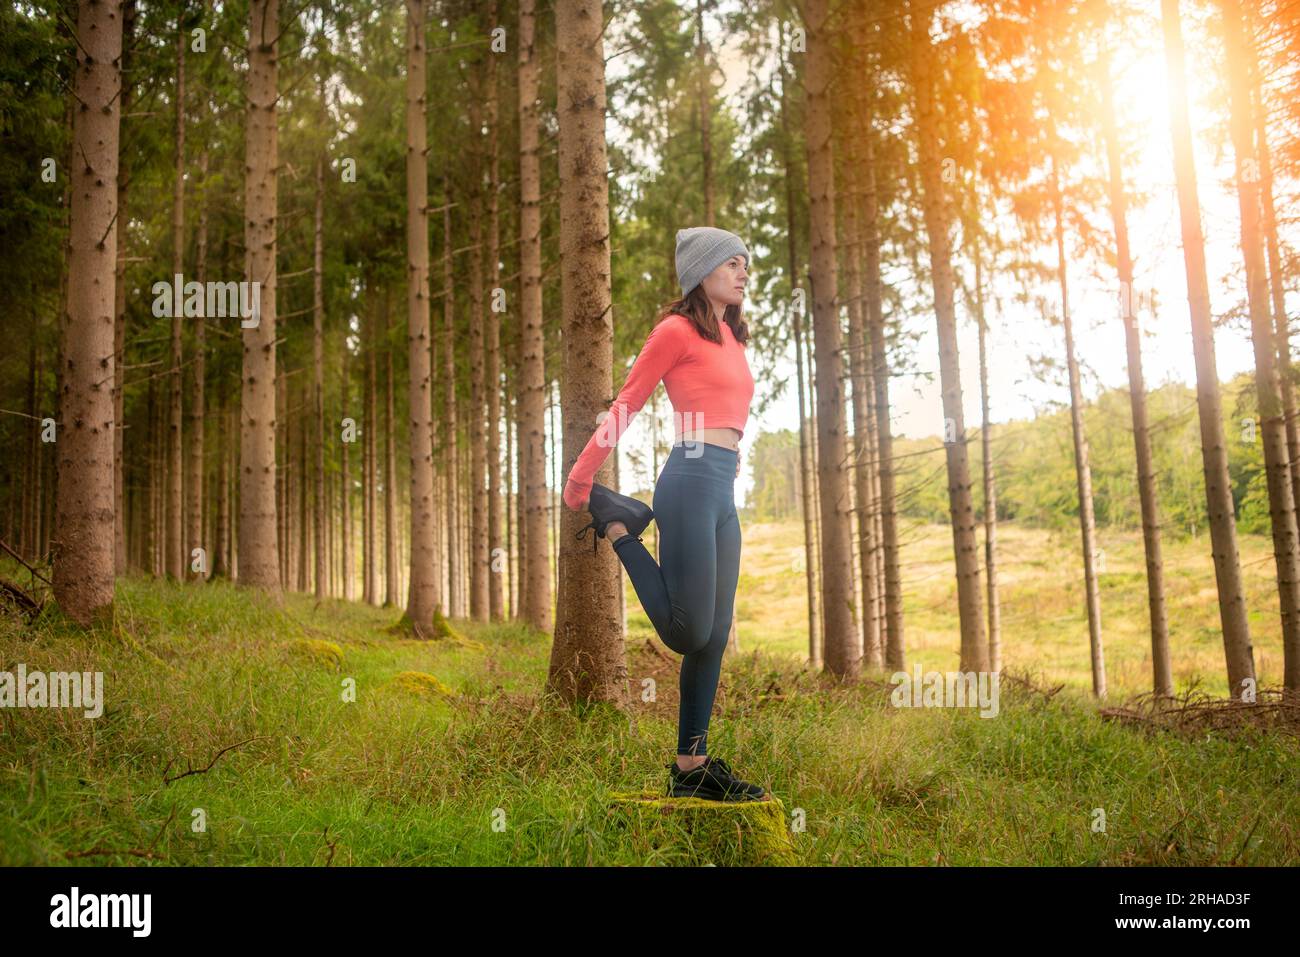 Sportliche Frau, die Beindehnungsübungen macht, draußen im Wald. Outdoor-Trainingskonzept. Stockfoto